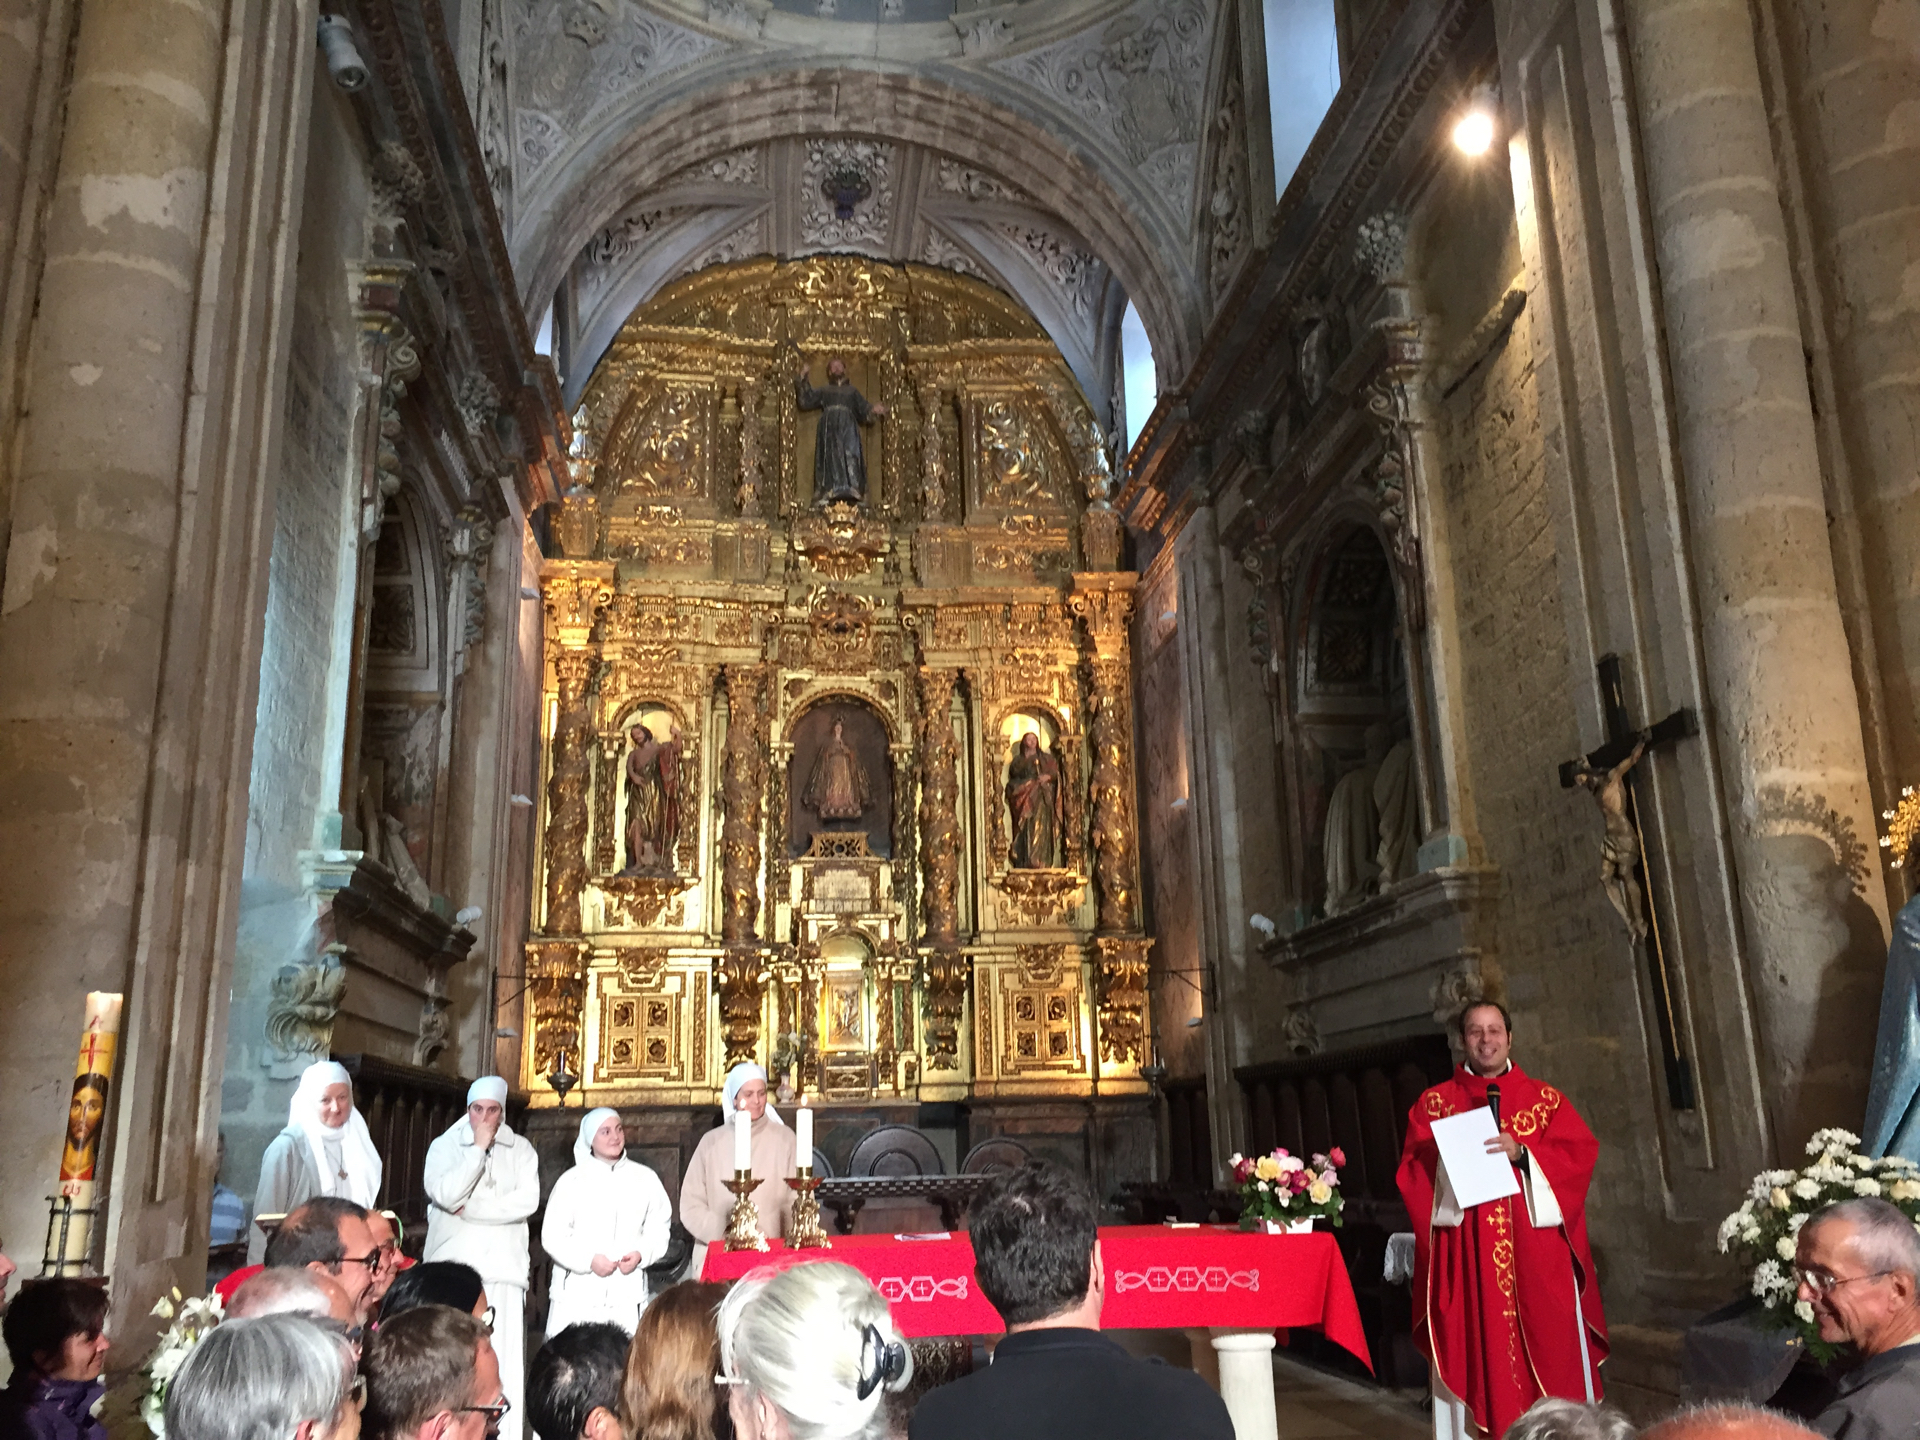 A priest performs a pilgrim blessing in the Church of Santa Mar&iacute;a in Carri&oacute;n de los Condes, Spain.